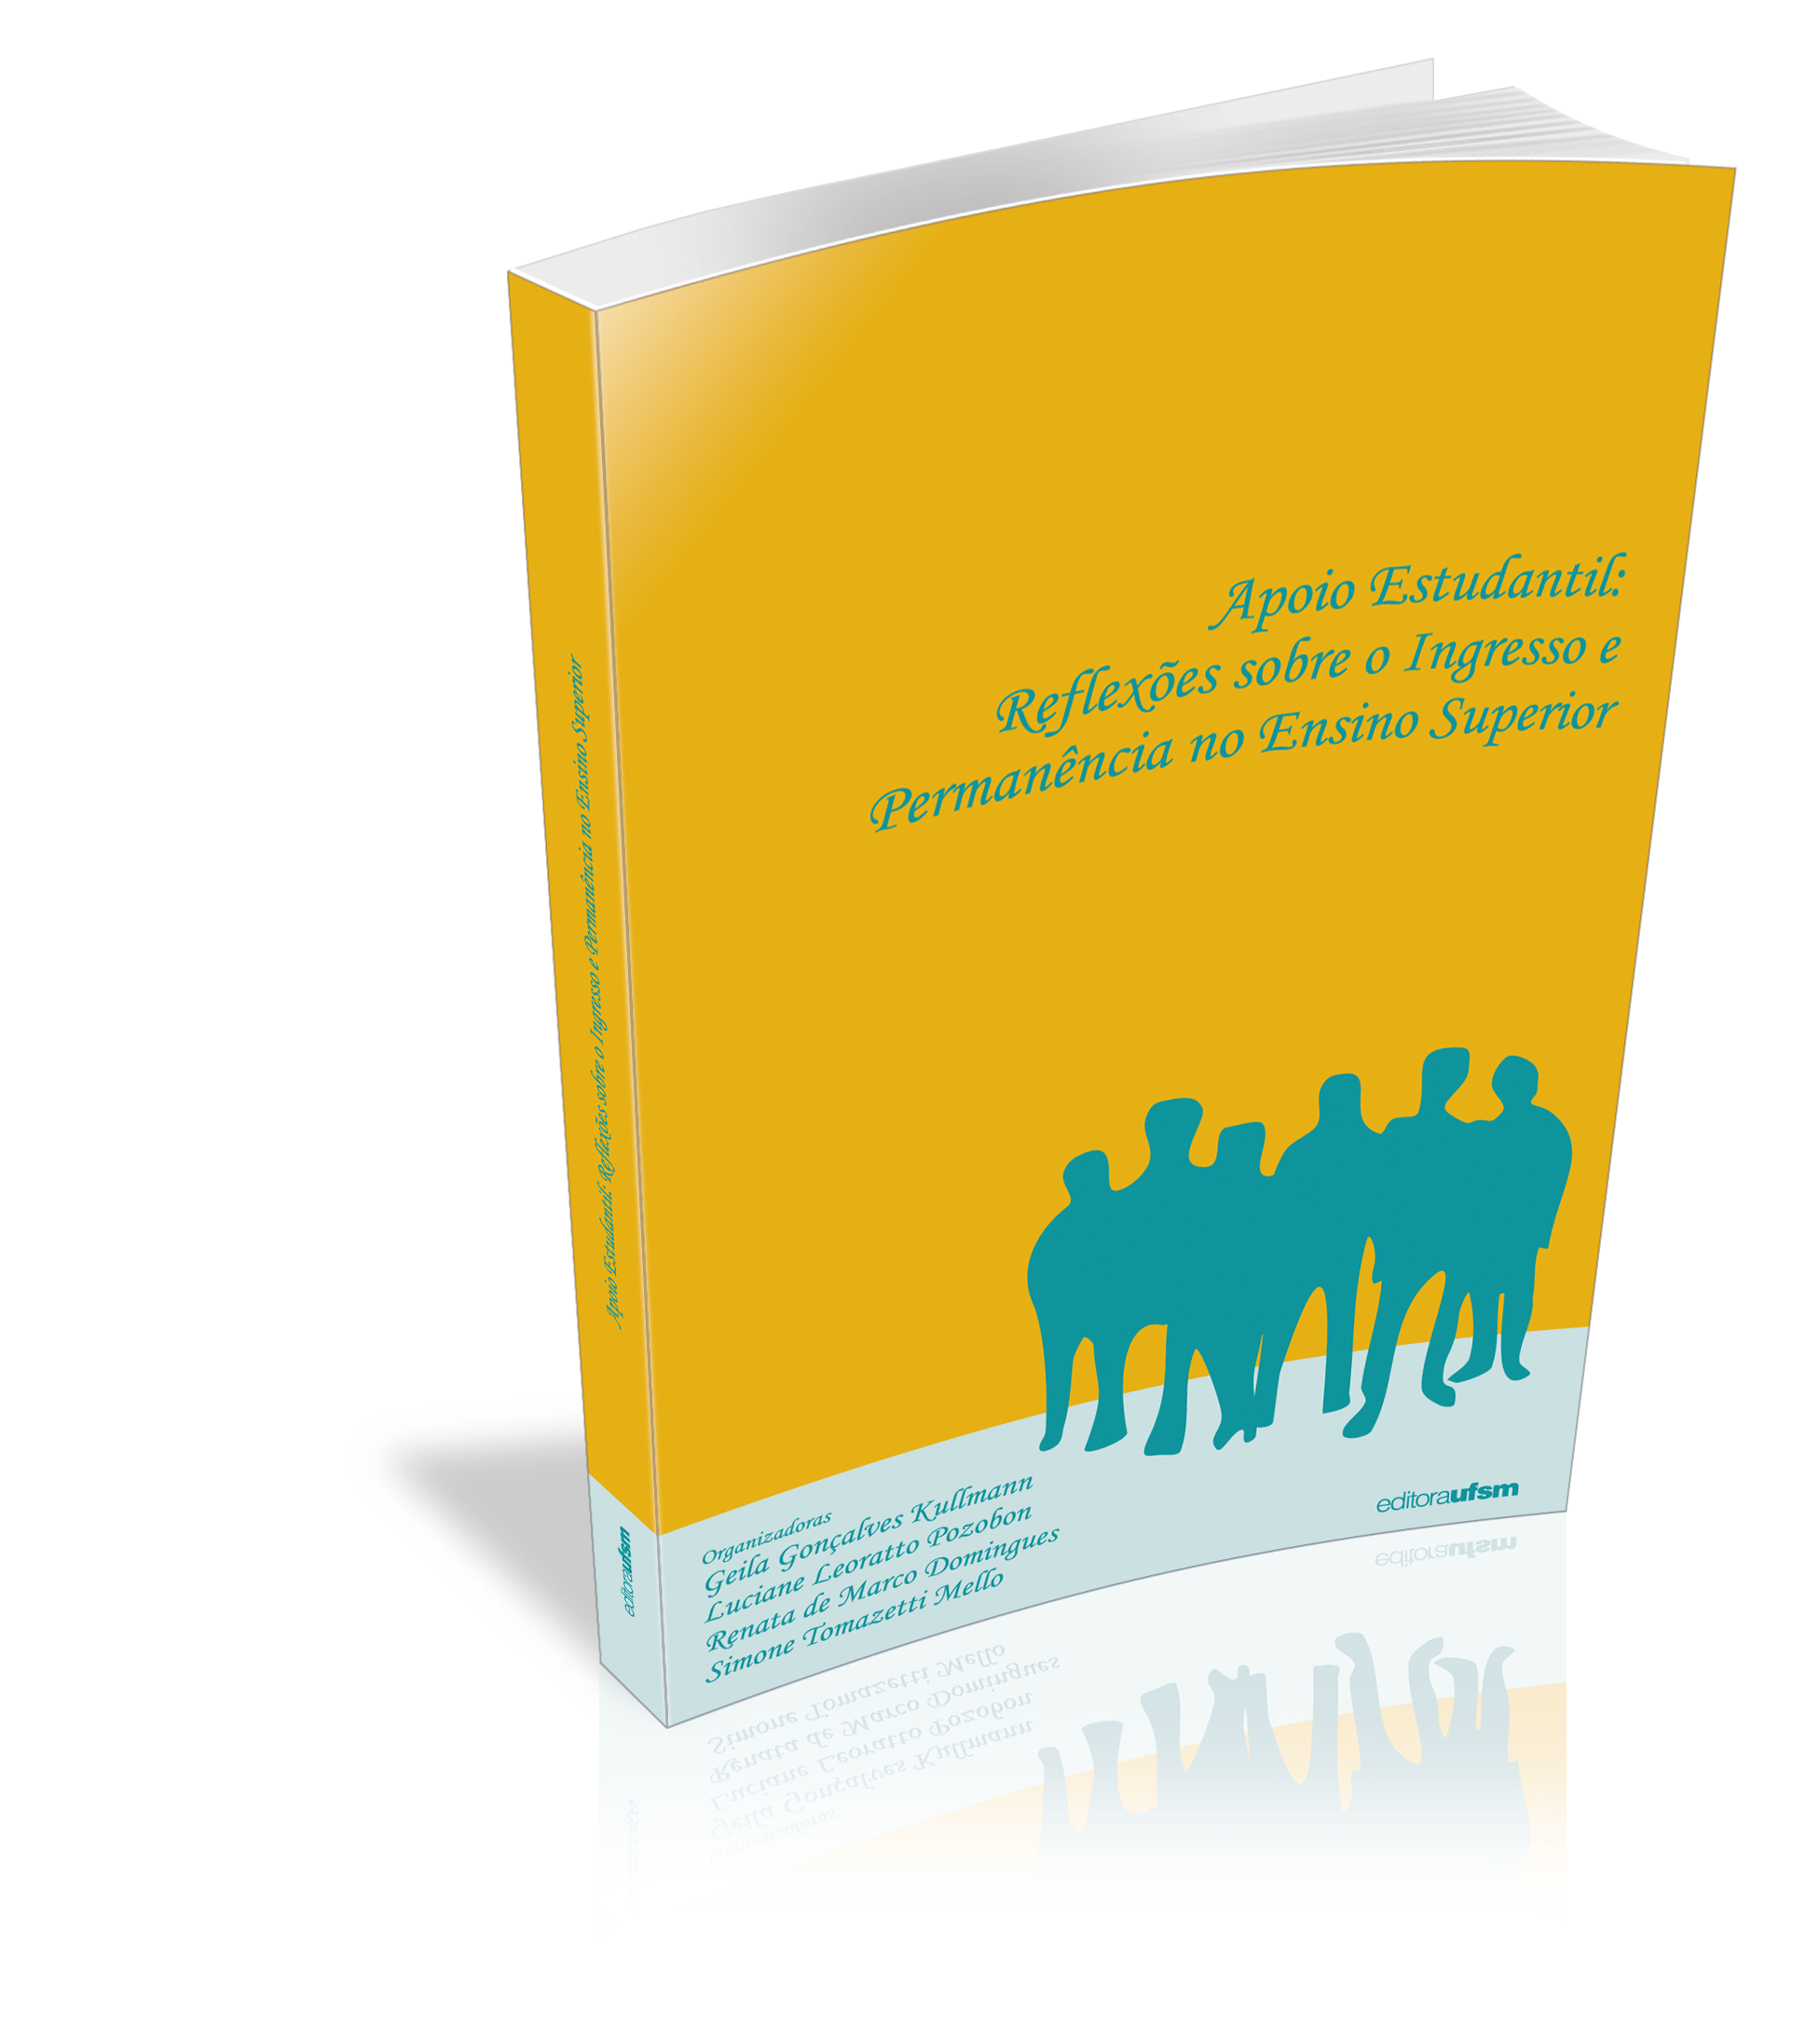 Capa do livro Apoio Estudantil: reflexões sobre o Ingresso e Permanência no Ensino Superior